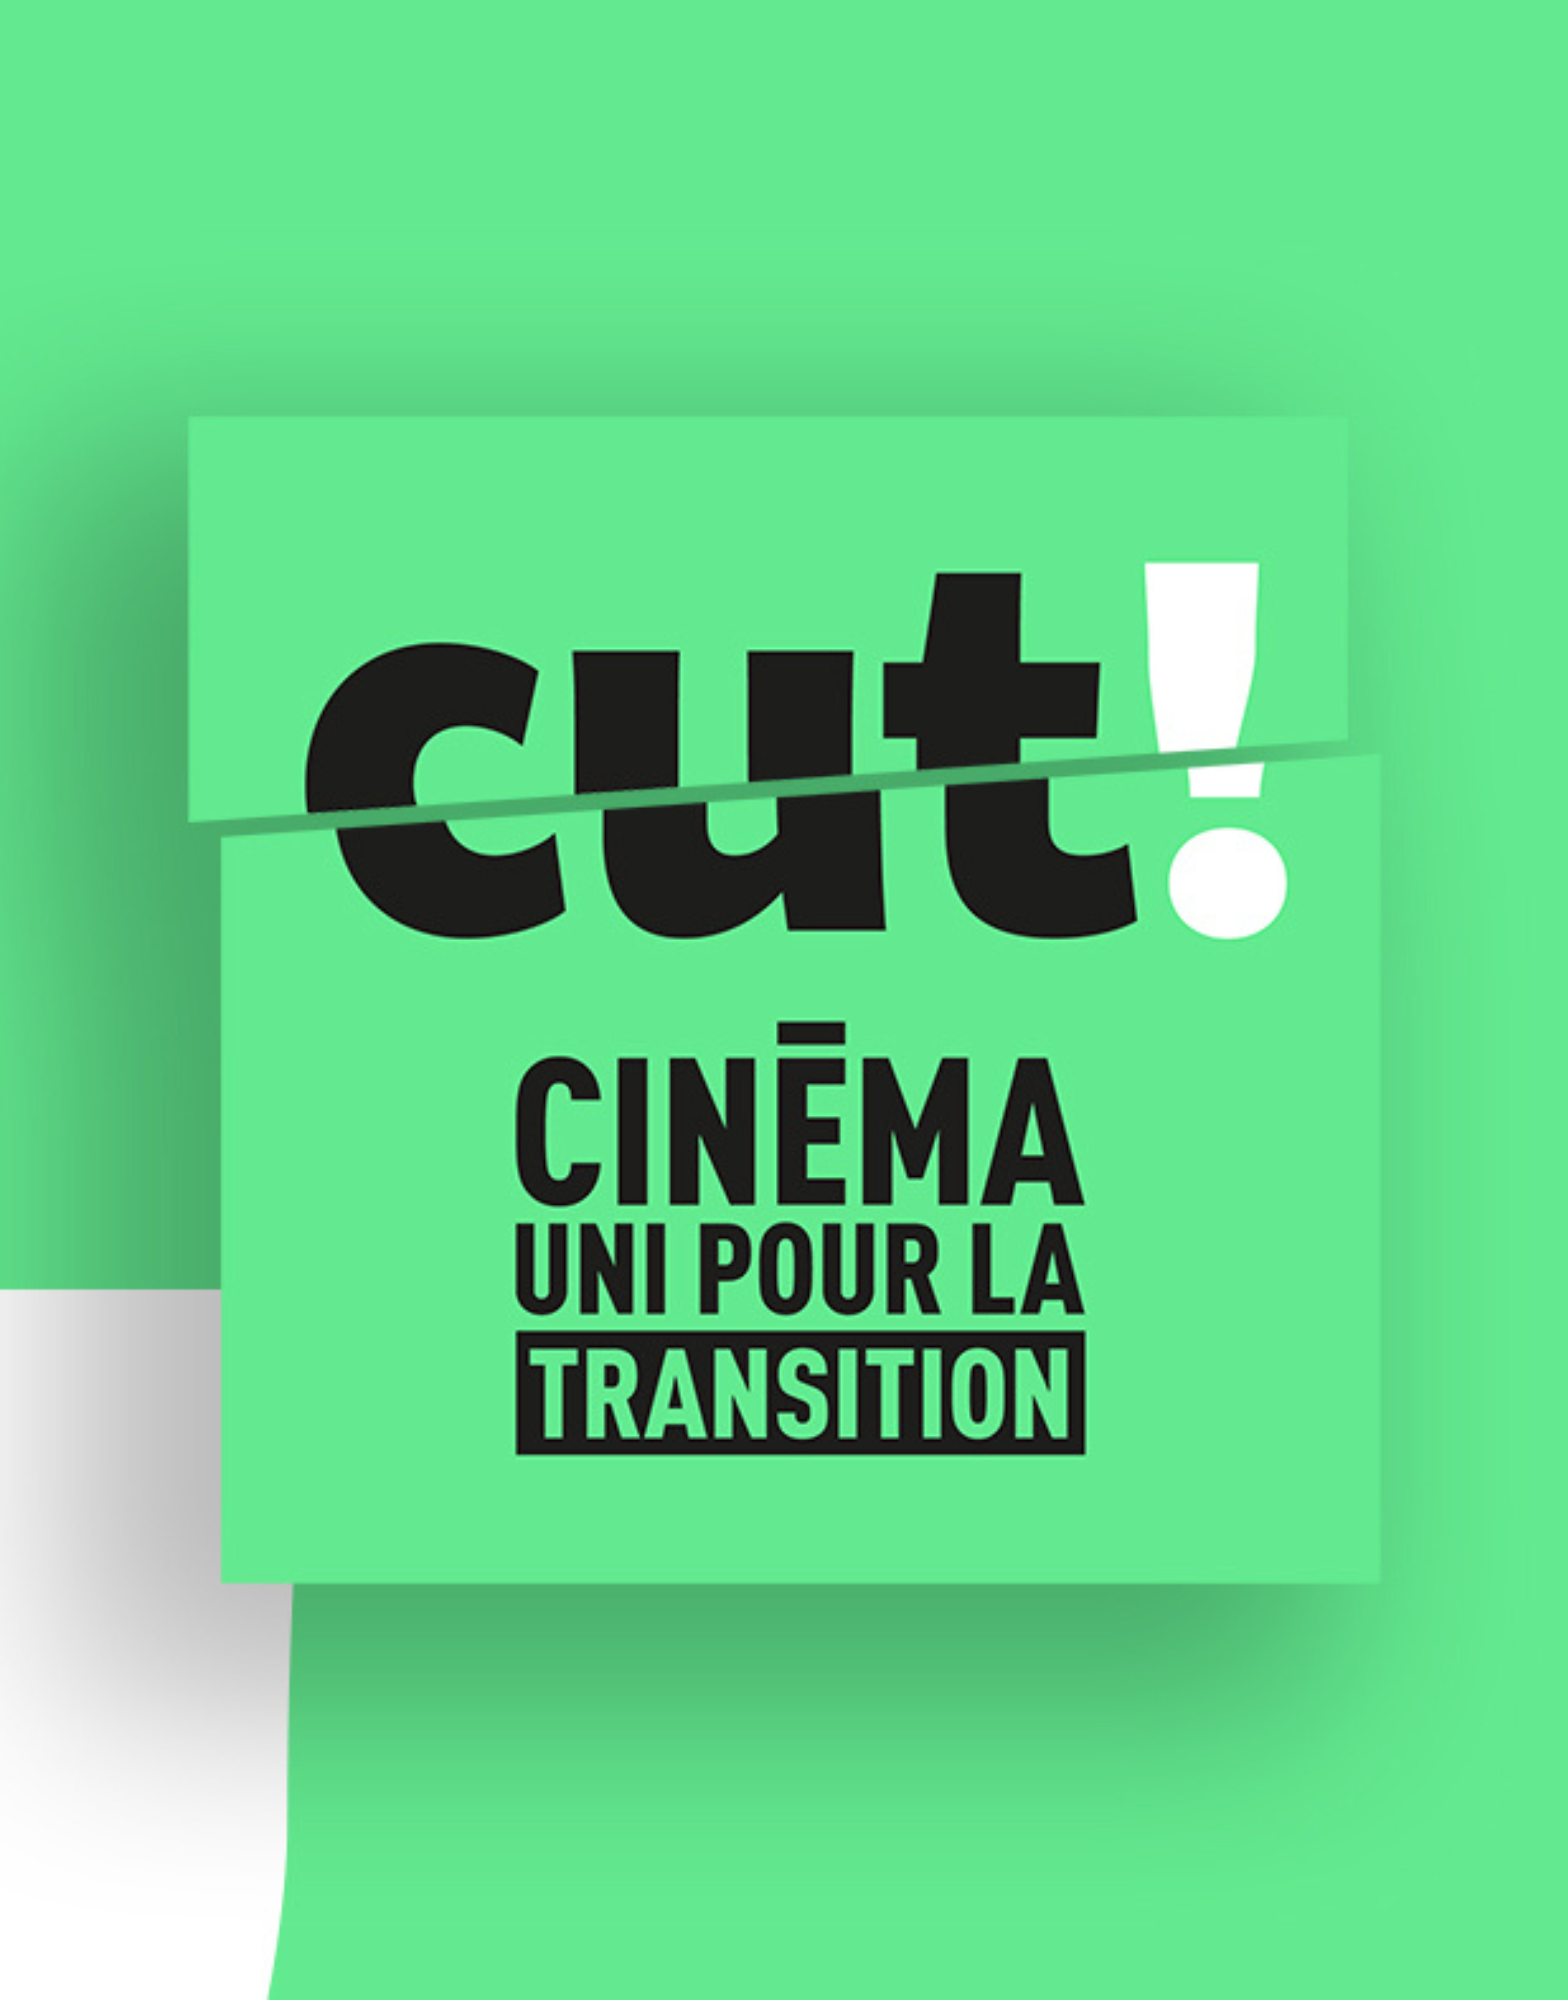 Collectif CUT!, préside le jury du Défi 48h Très Court Environnement de la 26e édition du Très Court International Film Festival